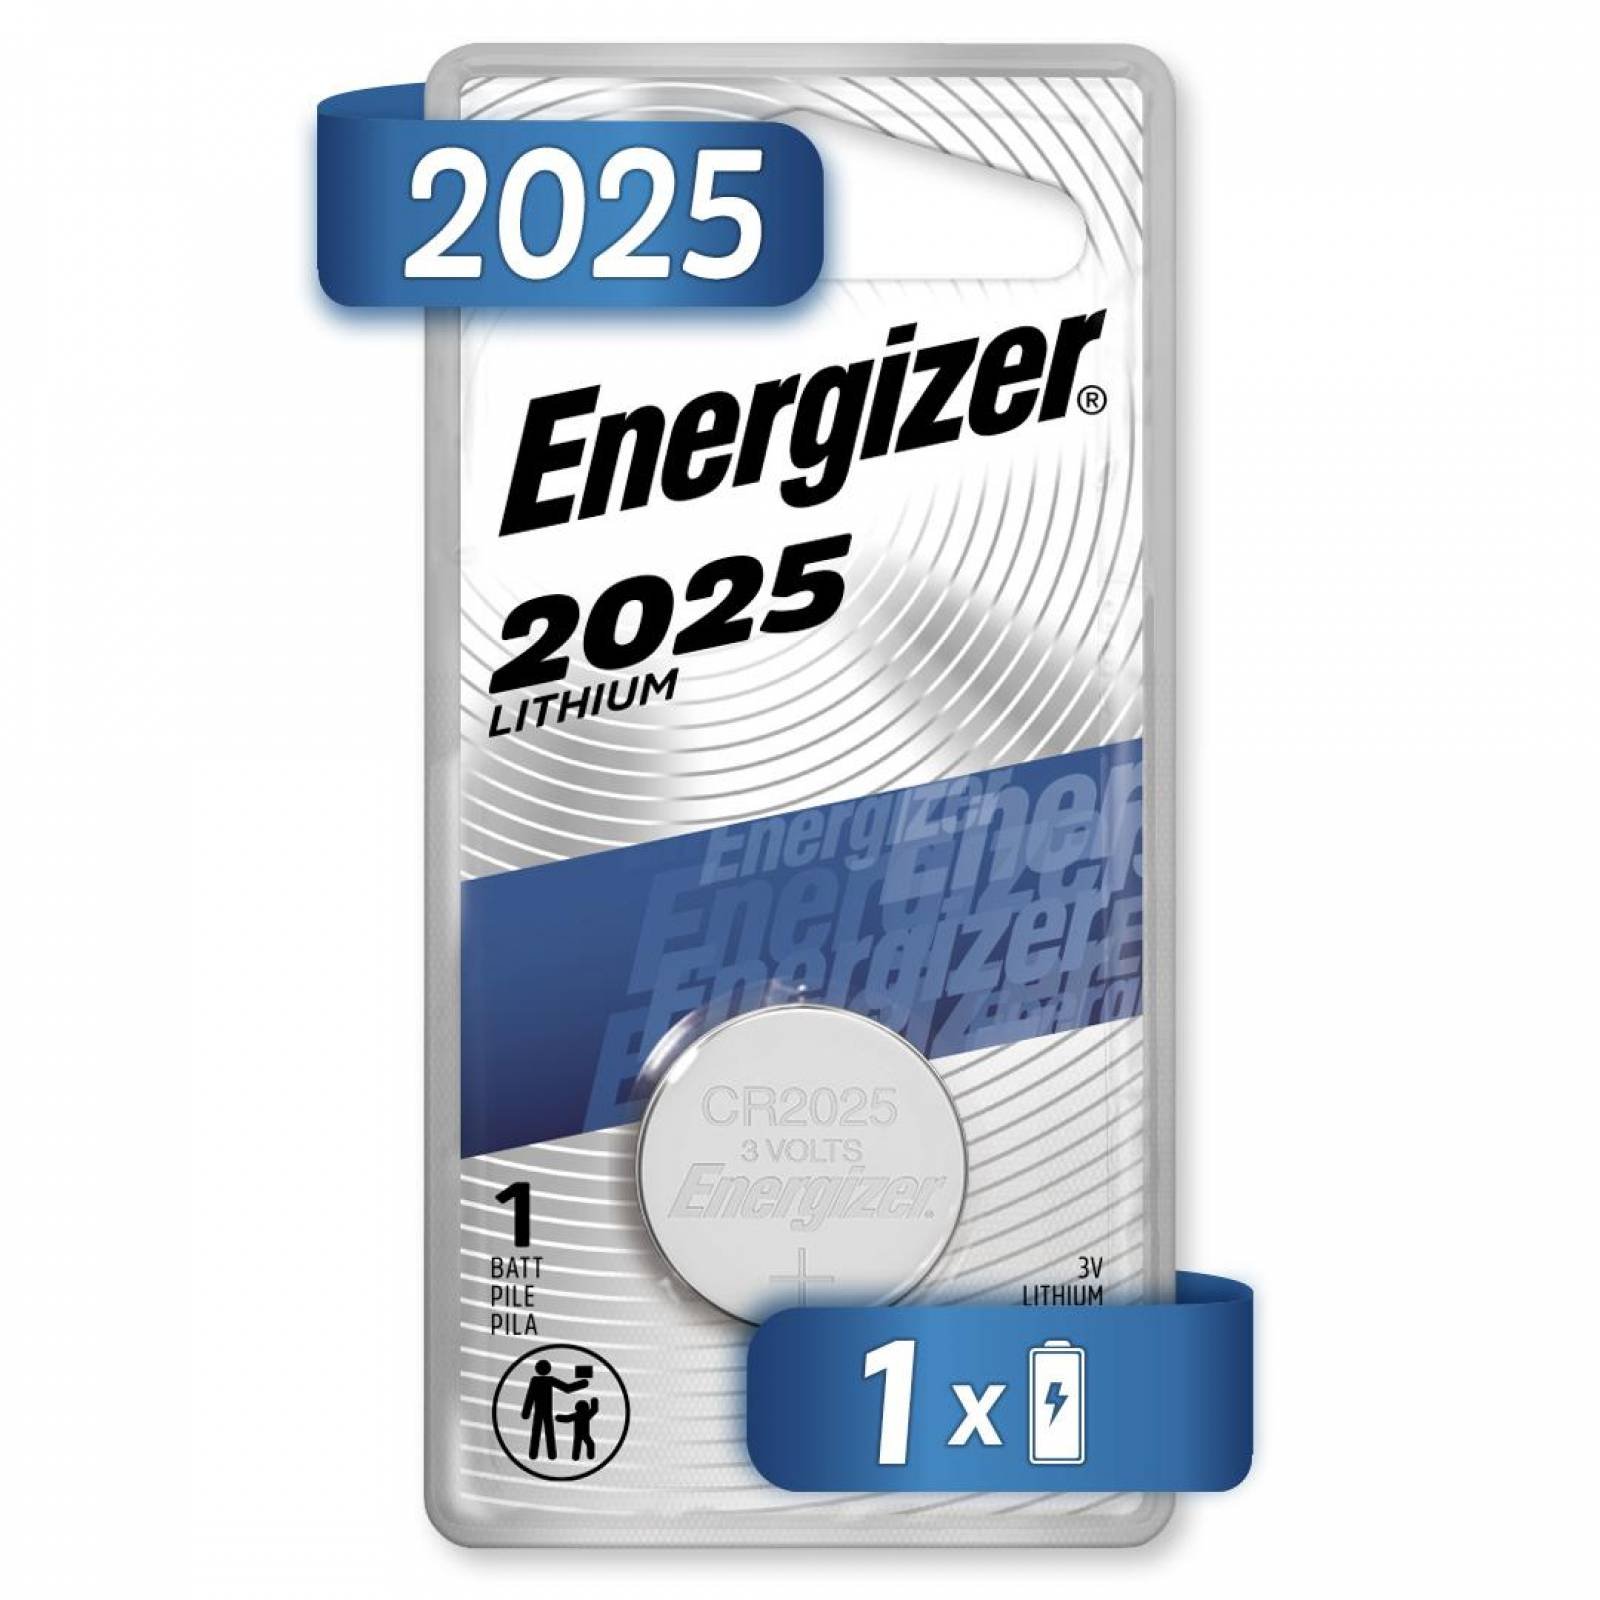 Pila Boton Energizer 2025 Litio Blister 6 Unidades 3v